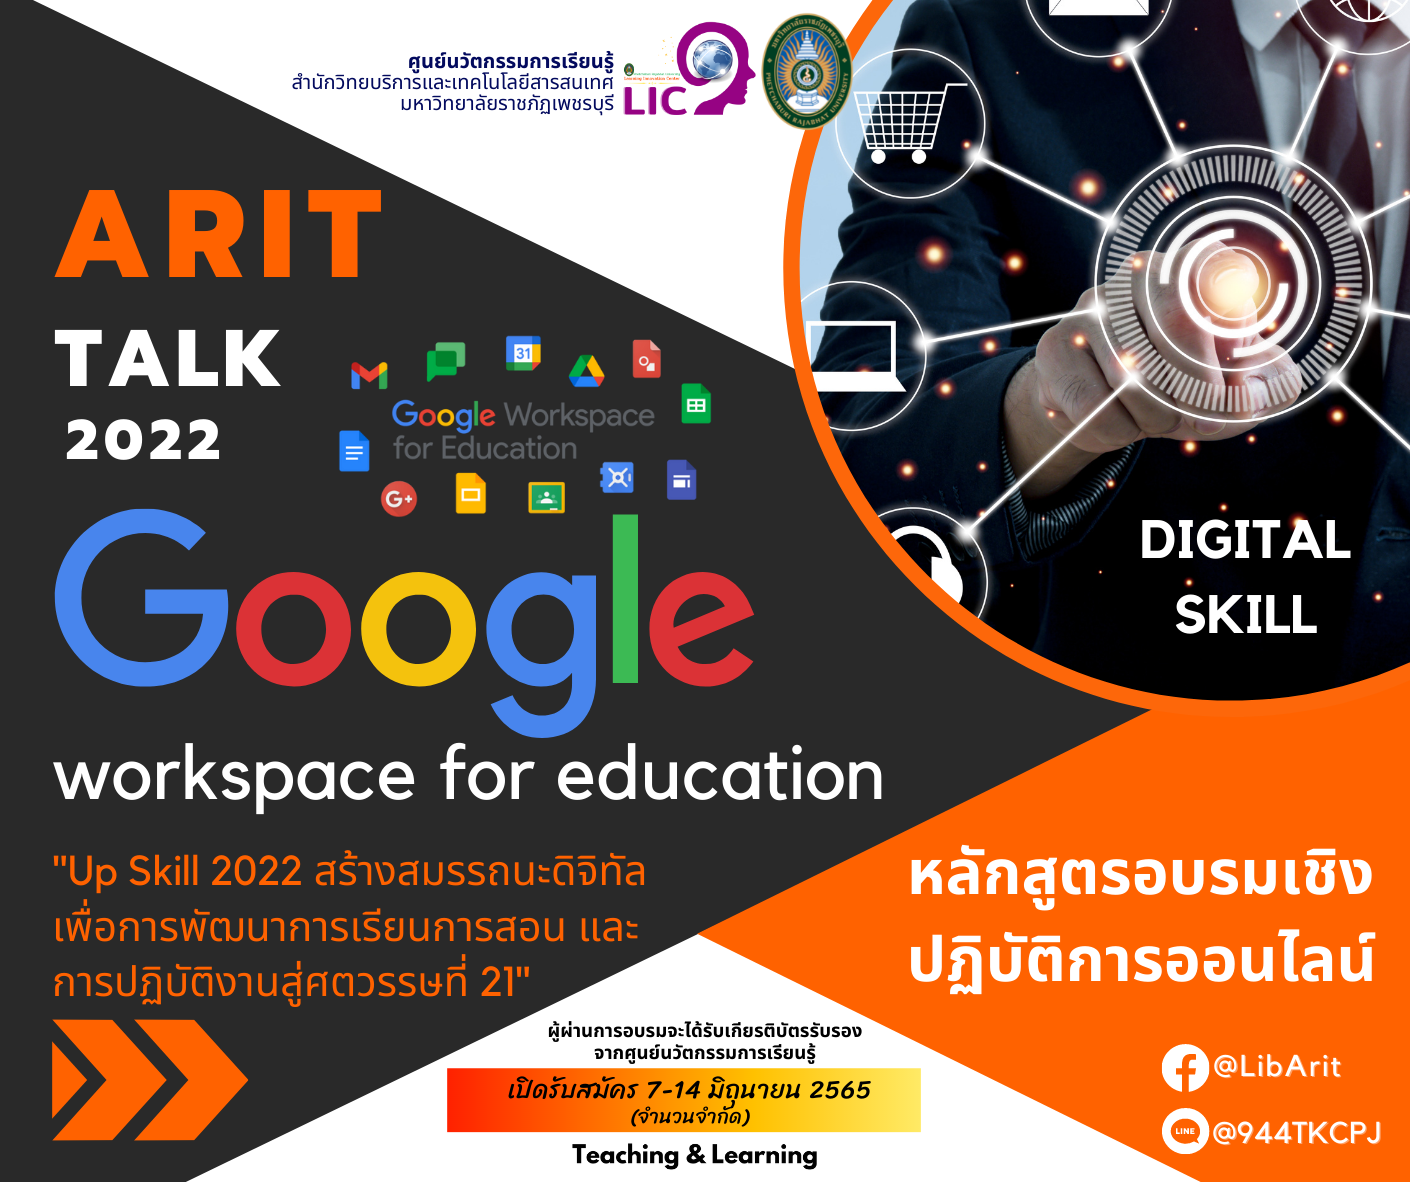 ขอเชิญชวน นักศึกษา บุคลากร และผู้ปฏิบัติงานสอนอบรมเชิงปฏิบัติการหลักสูตร (ออนไลน์) ARIT Talk 2022 : Google workspace for education  Up Skill 2022 สร้างสมรรถนะดิจิทัลเพื่อการพัฒนาการเรียนการสอนและการปฏิบัติงานสู่ศตวรรษที่ 21